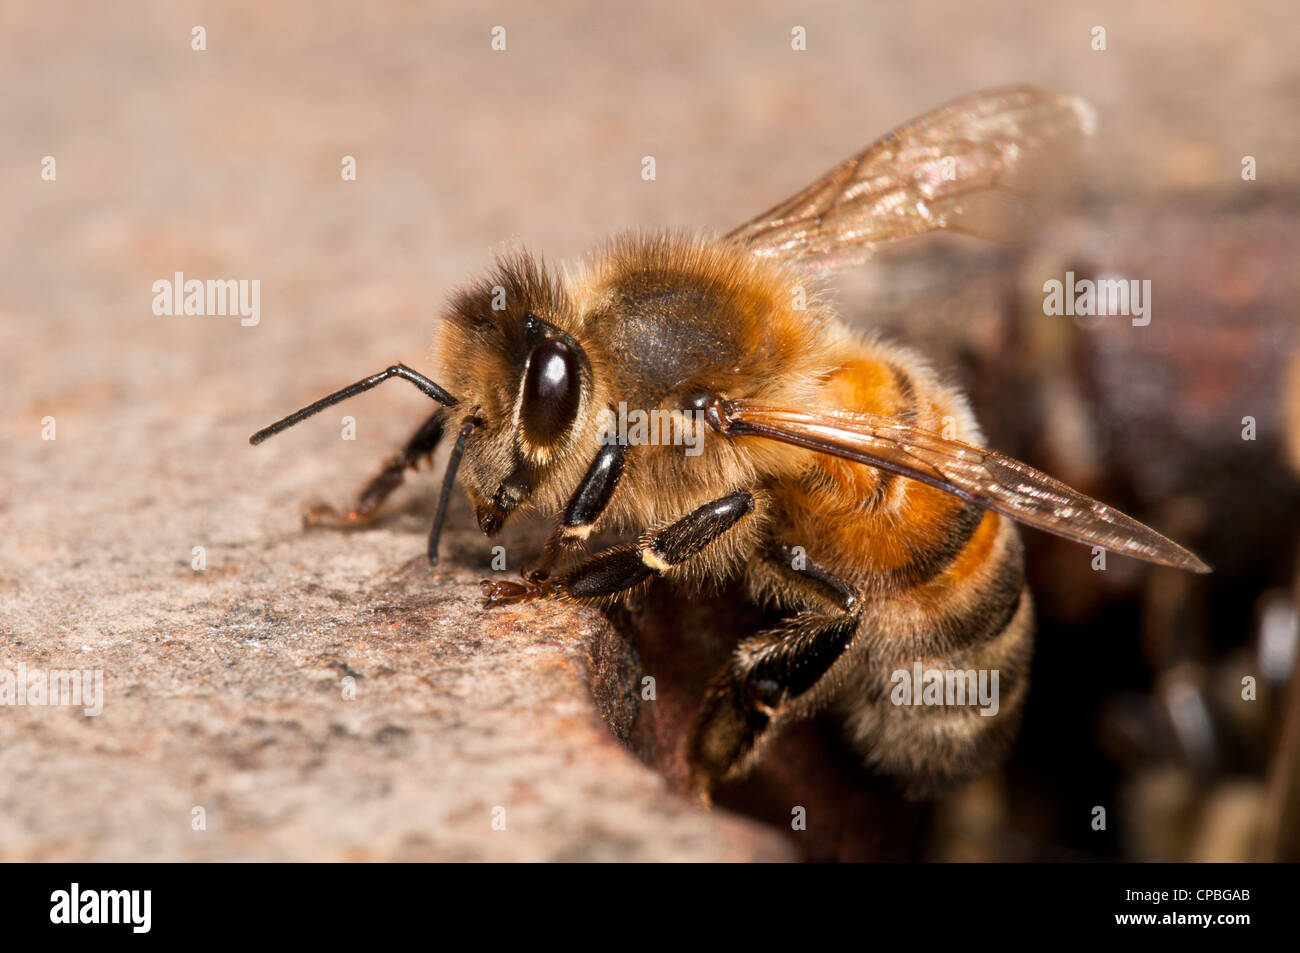 Un travailleur d'une abeille domestique (Apis mellifera) quitte le nid pour aller se nourrir. Nature Rerserve glosas emilianenses, Bexley, Kent. Juin Banque D'Images